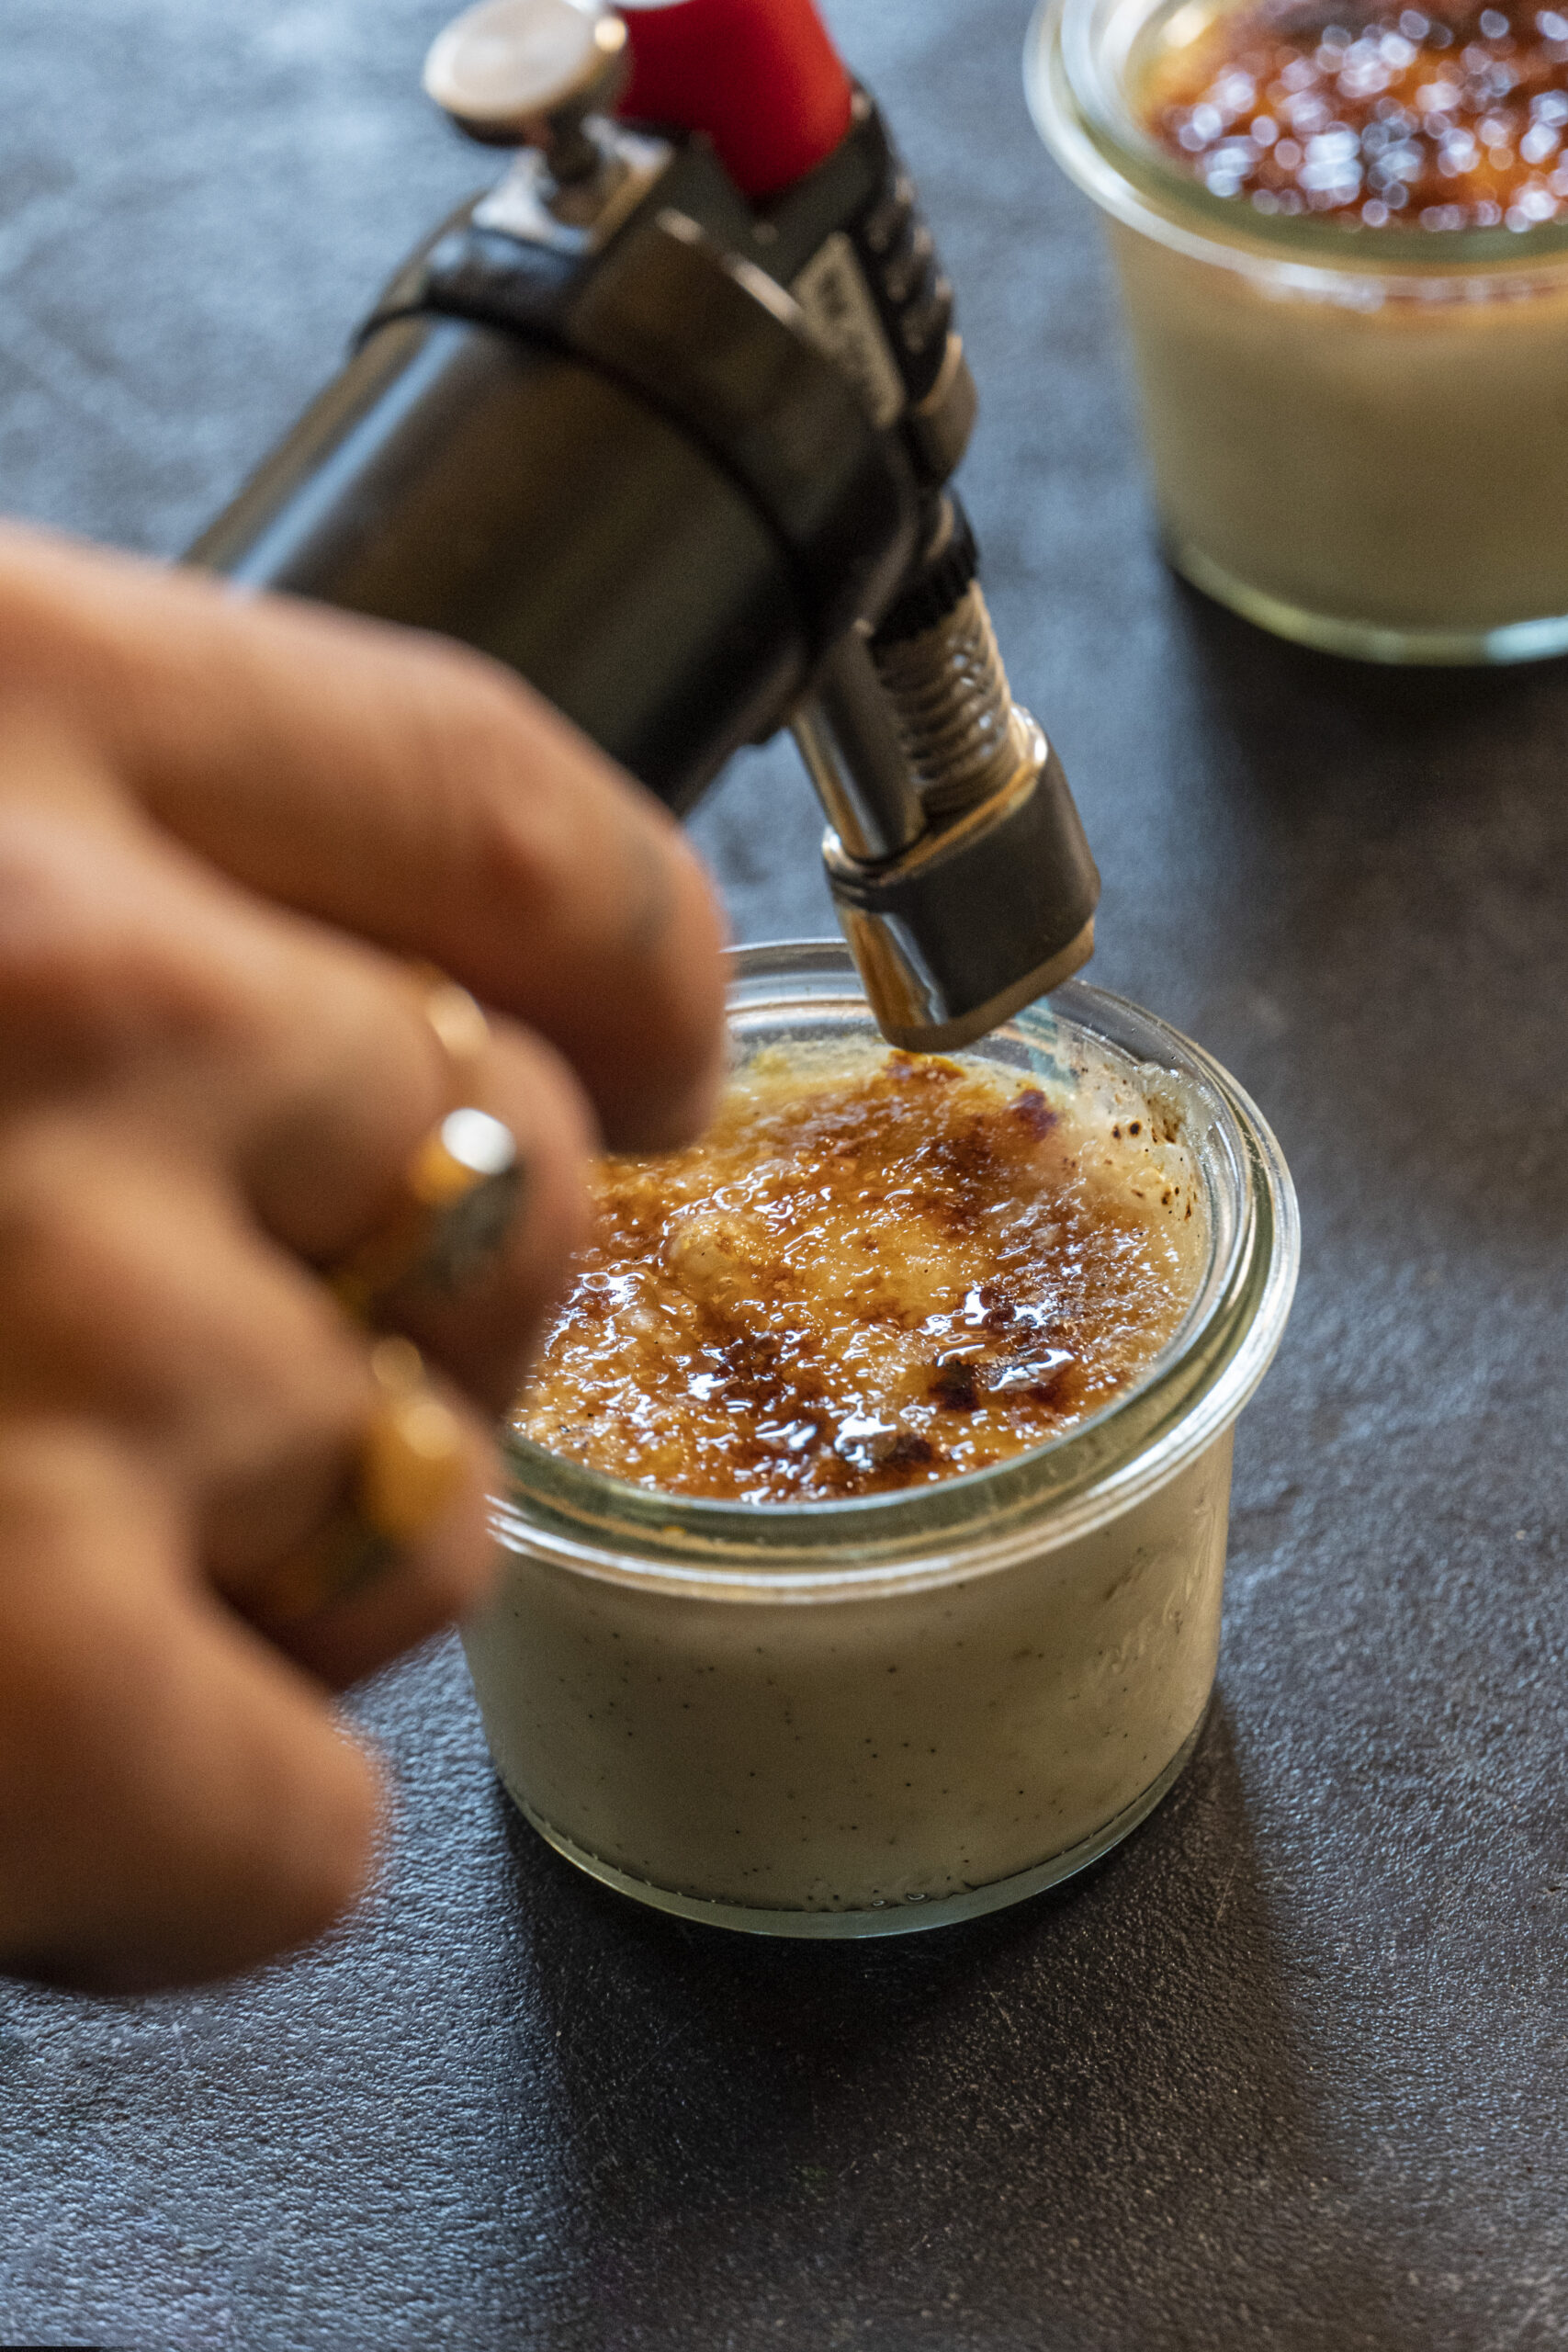 La croûte cassante du dessus est parfaitement équilibrée par l'onctuosité de la crème à la vanille.